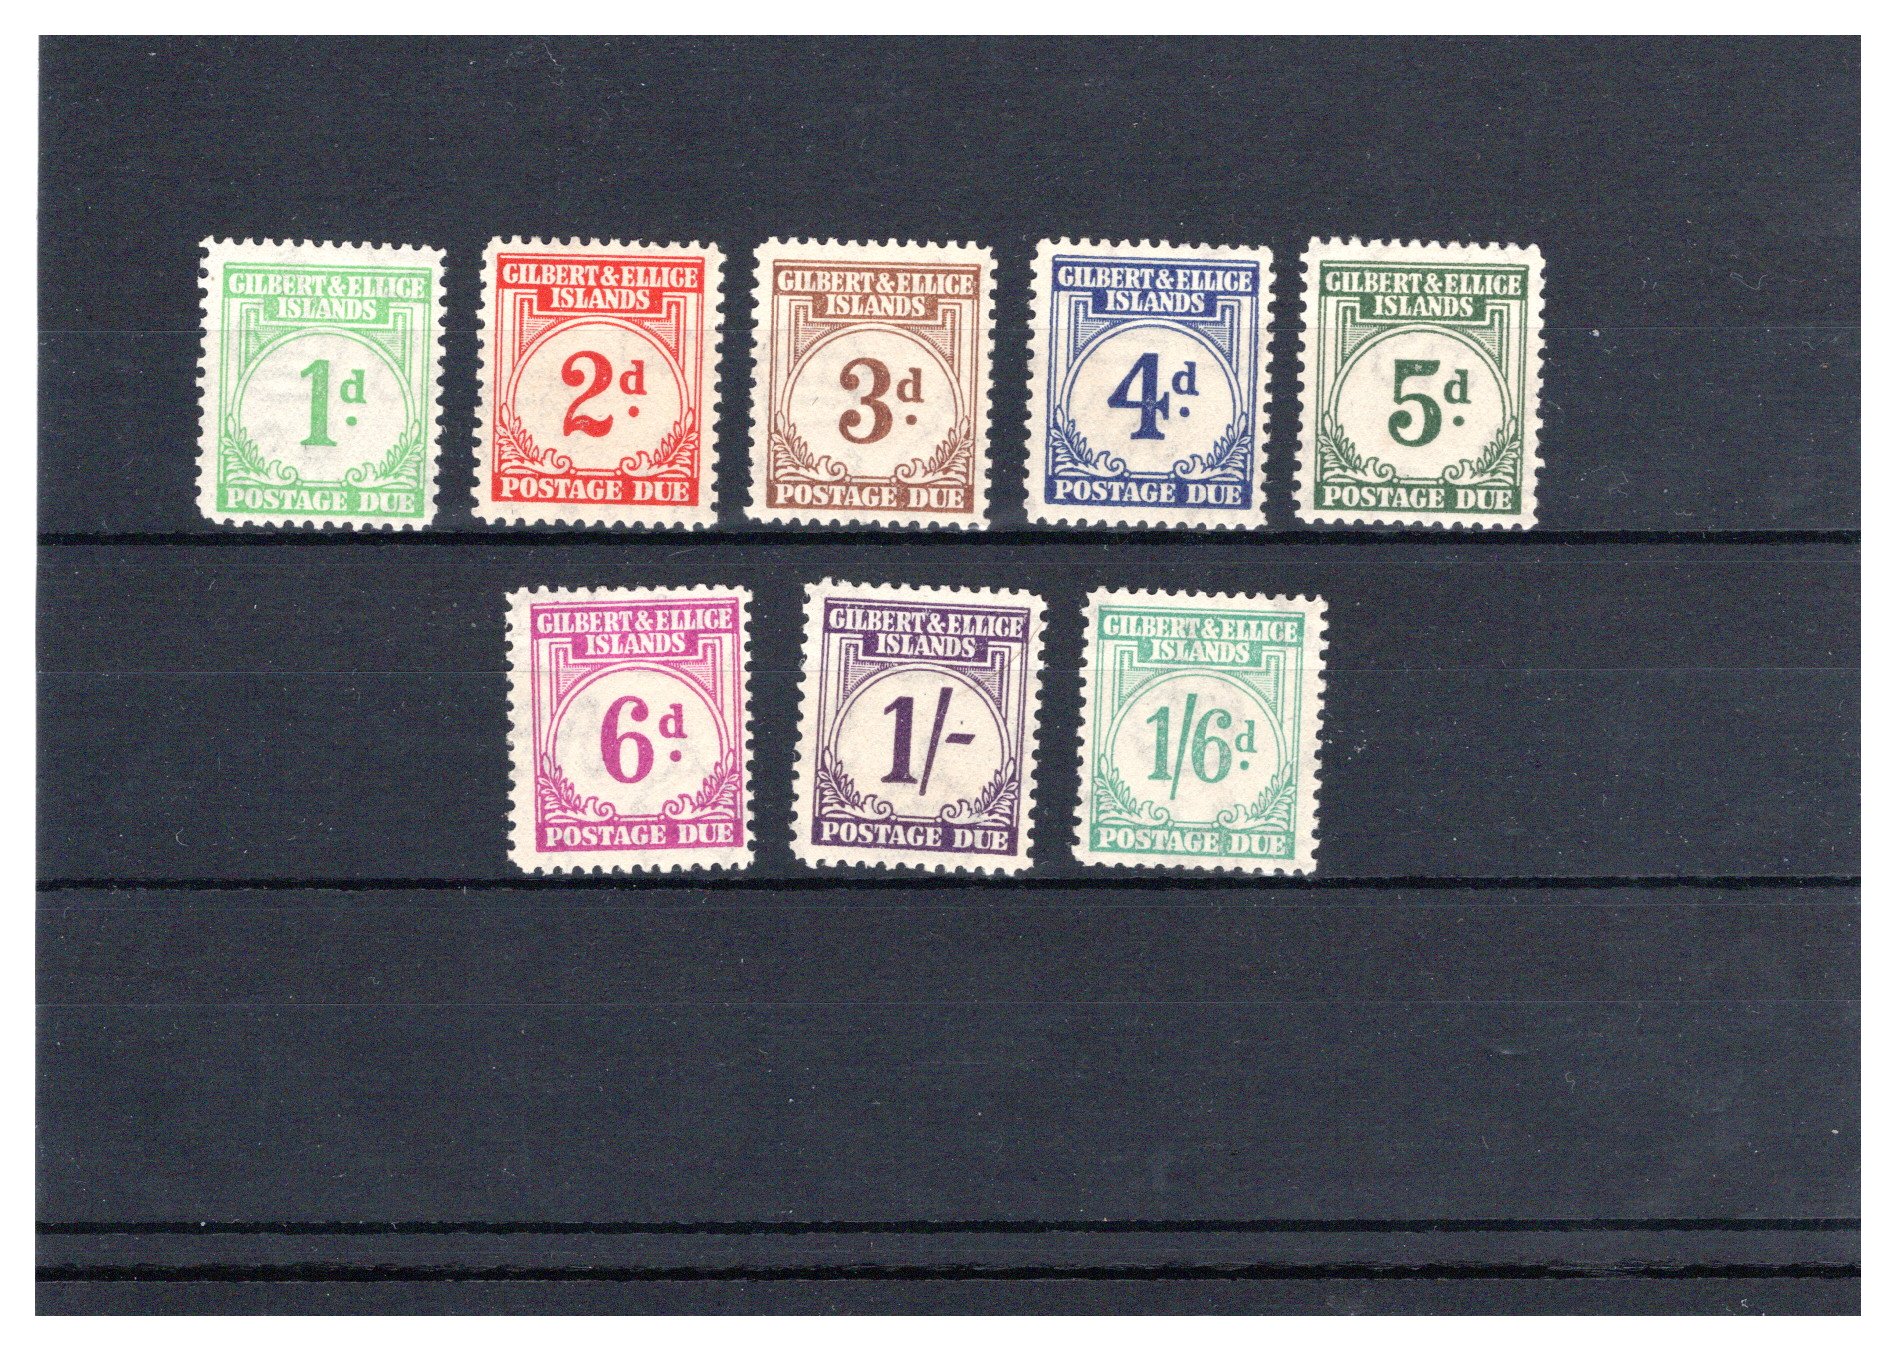 Lot 207 - British Commonwealth Gilbert & Ellice Islands postage stamps -  Georg Bühler Briefmarken Auktionen GmbH 27th mail bid auction